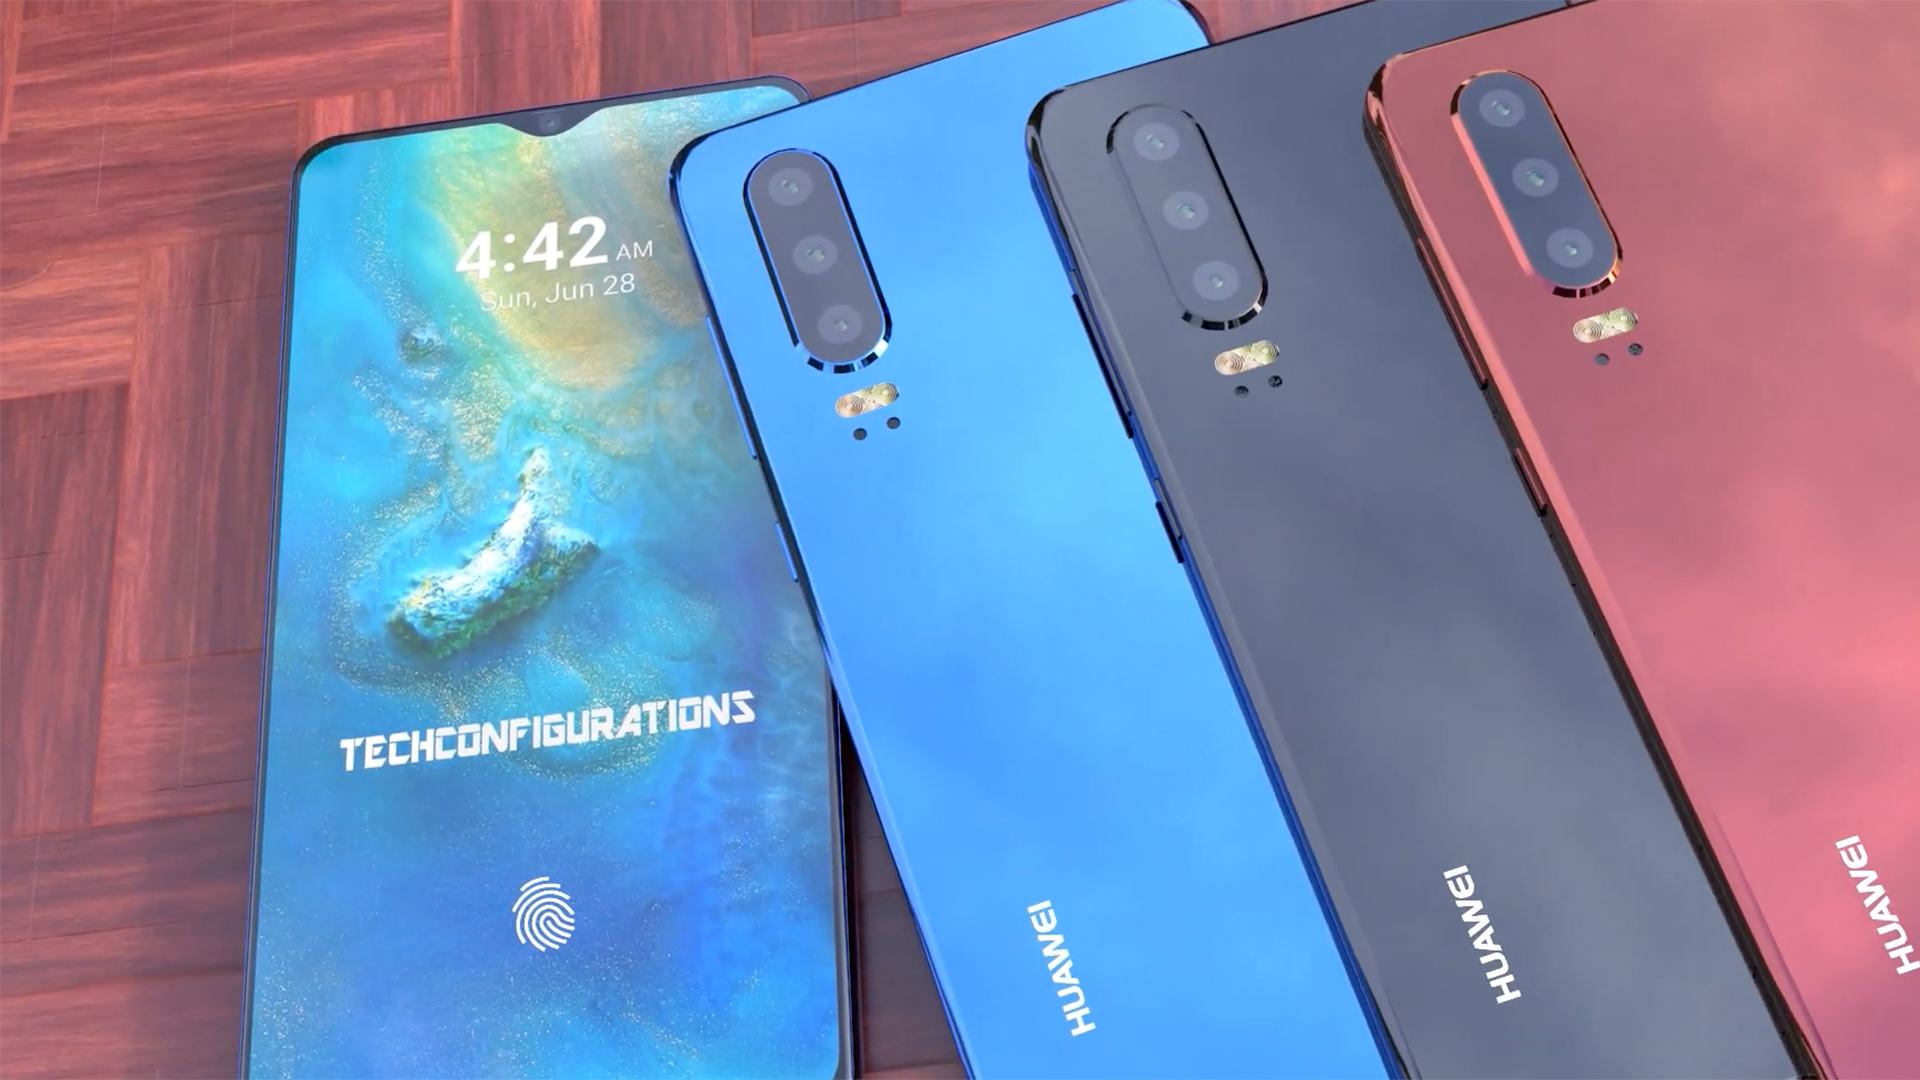 Dòng smartphone của Huawei - P30 Pro sắp ra mắt trong 2021